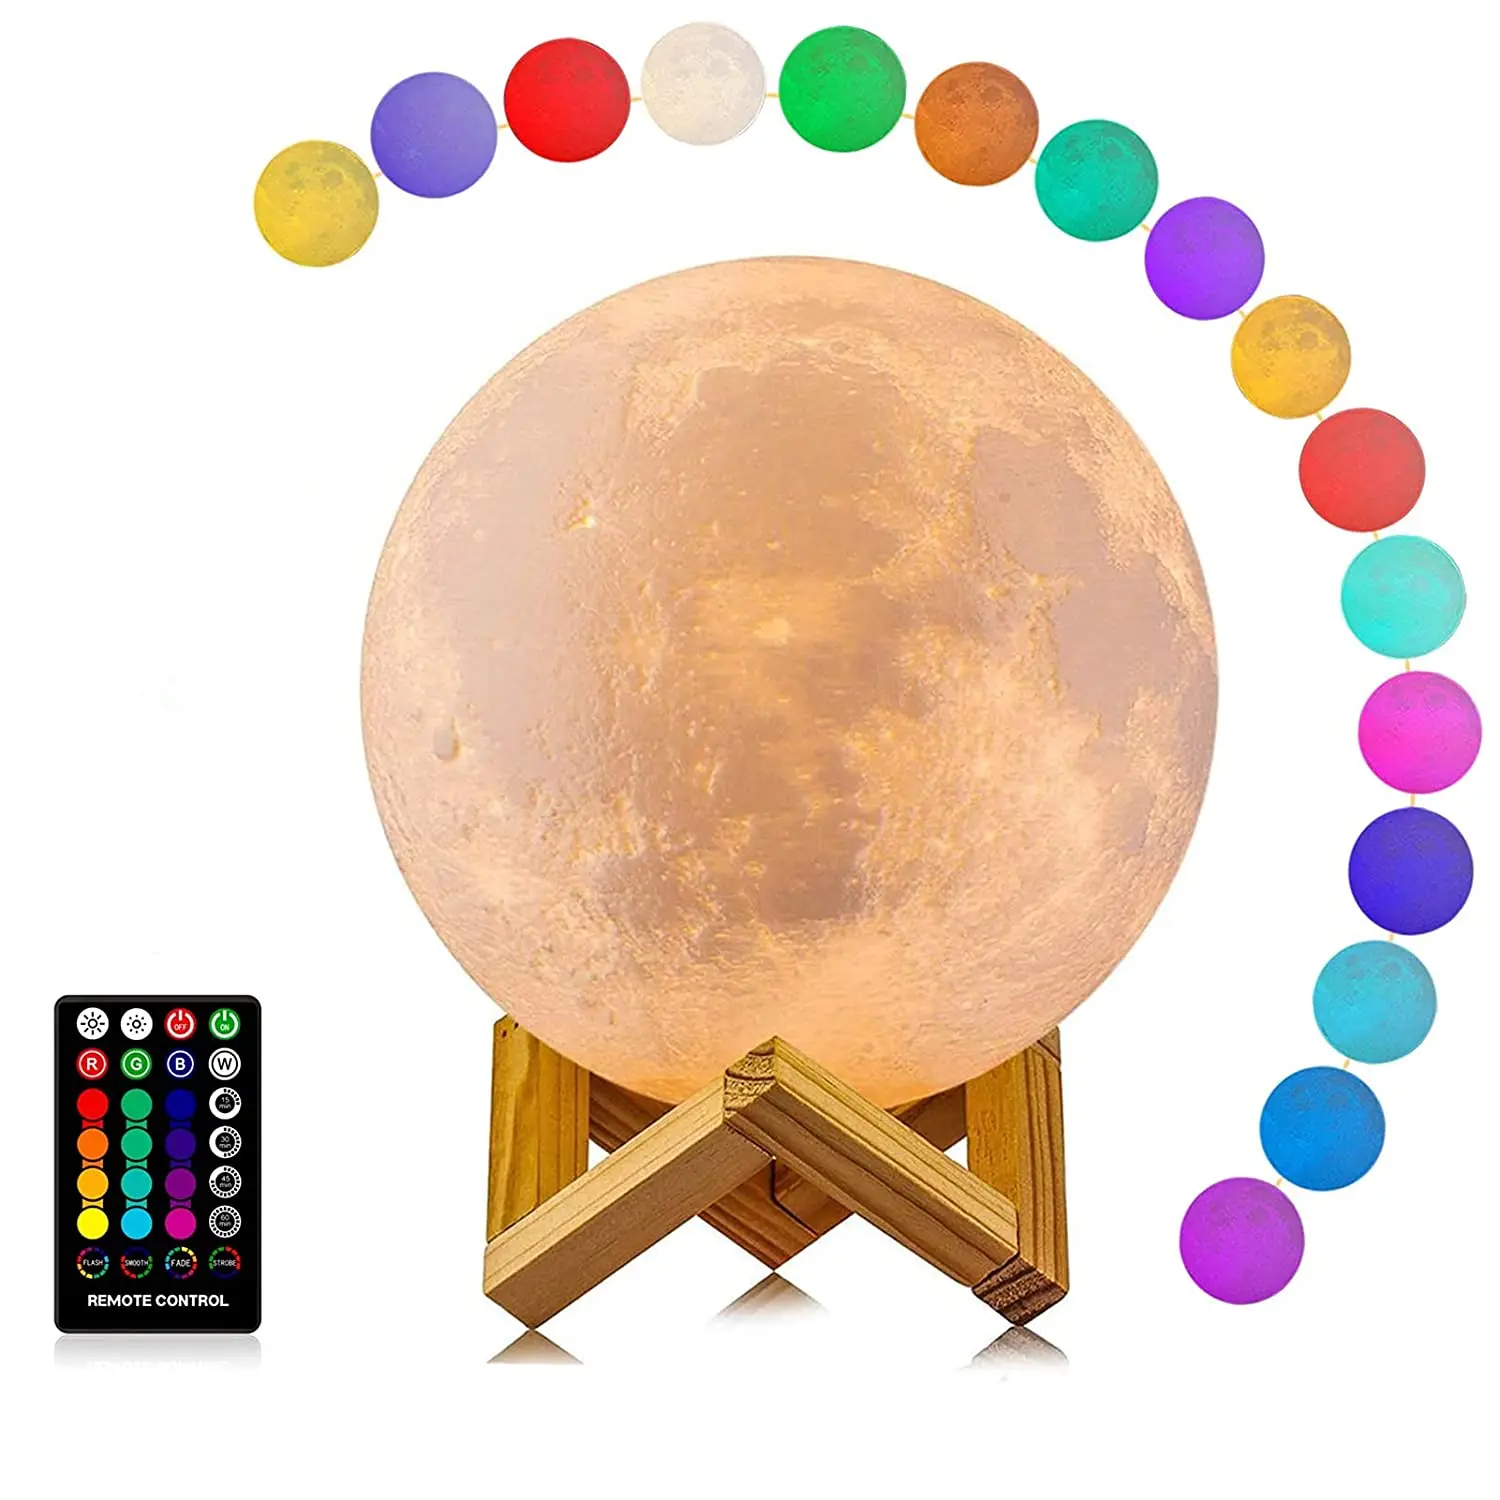 

Лампа в форме Луны, 16 цветов, светодиодный ночсветильник с 3D рисунком Луны светильник с подставкой и дистанционным управлением, сенсорным у...